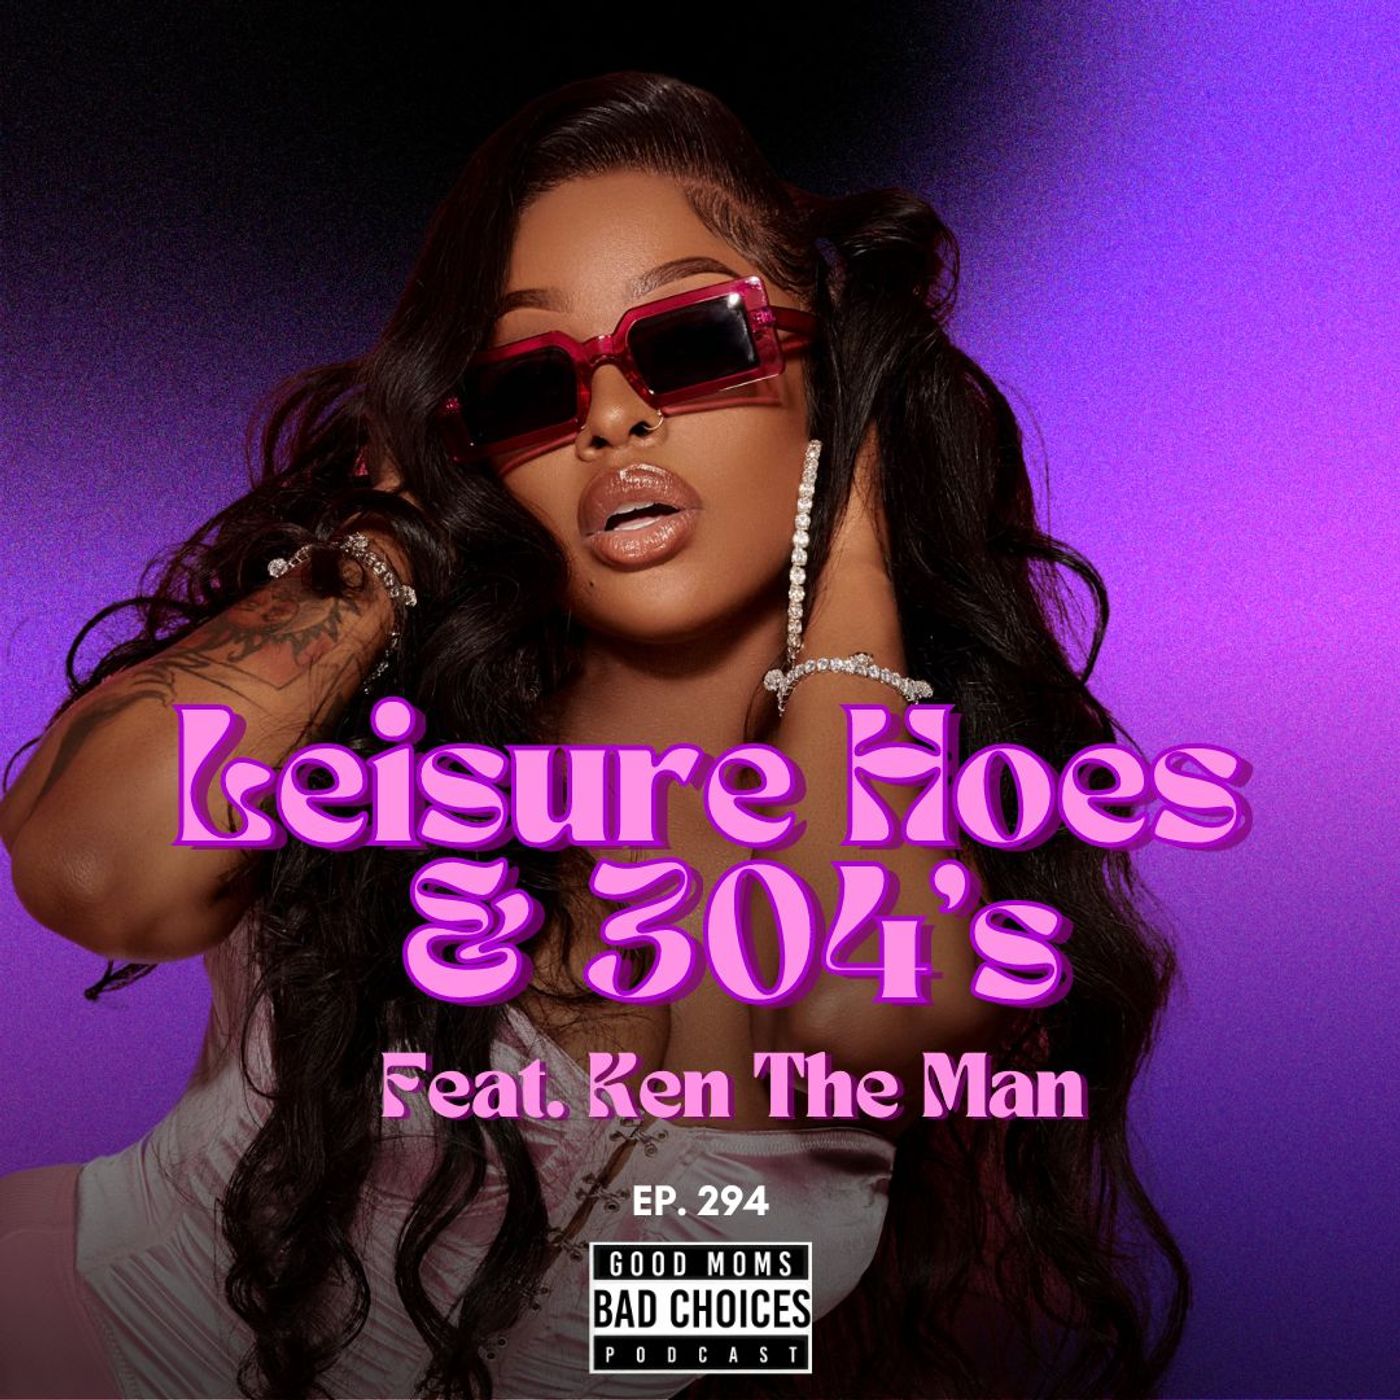 Leisure Hoe’s & 304’s feat. KenTheMan